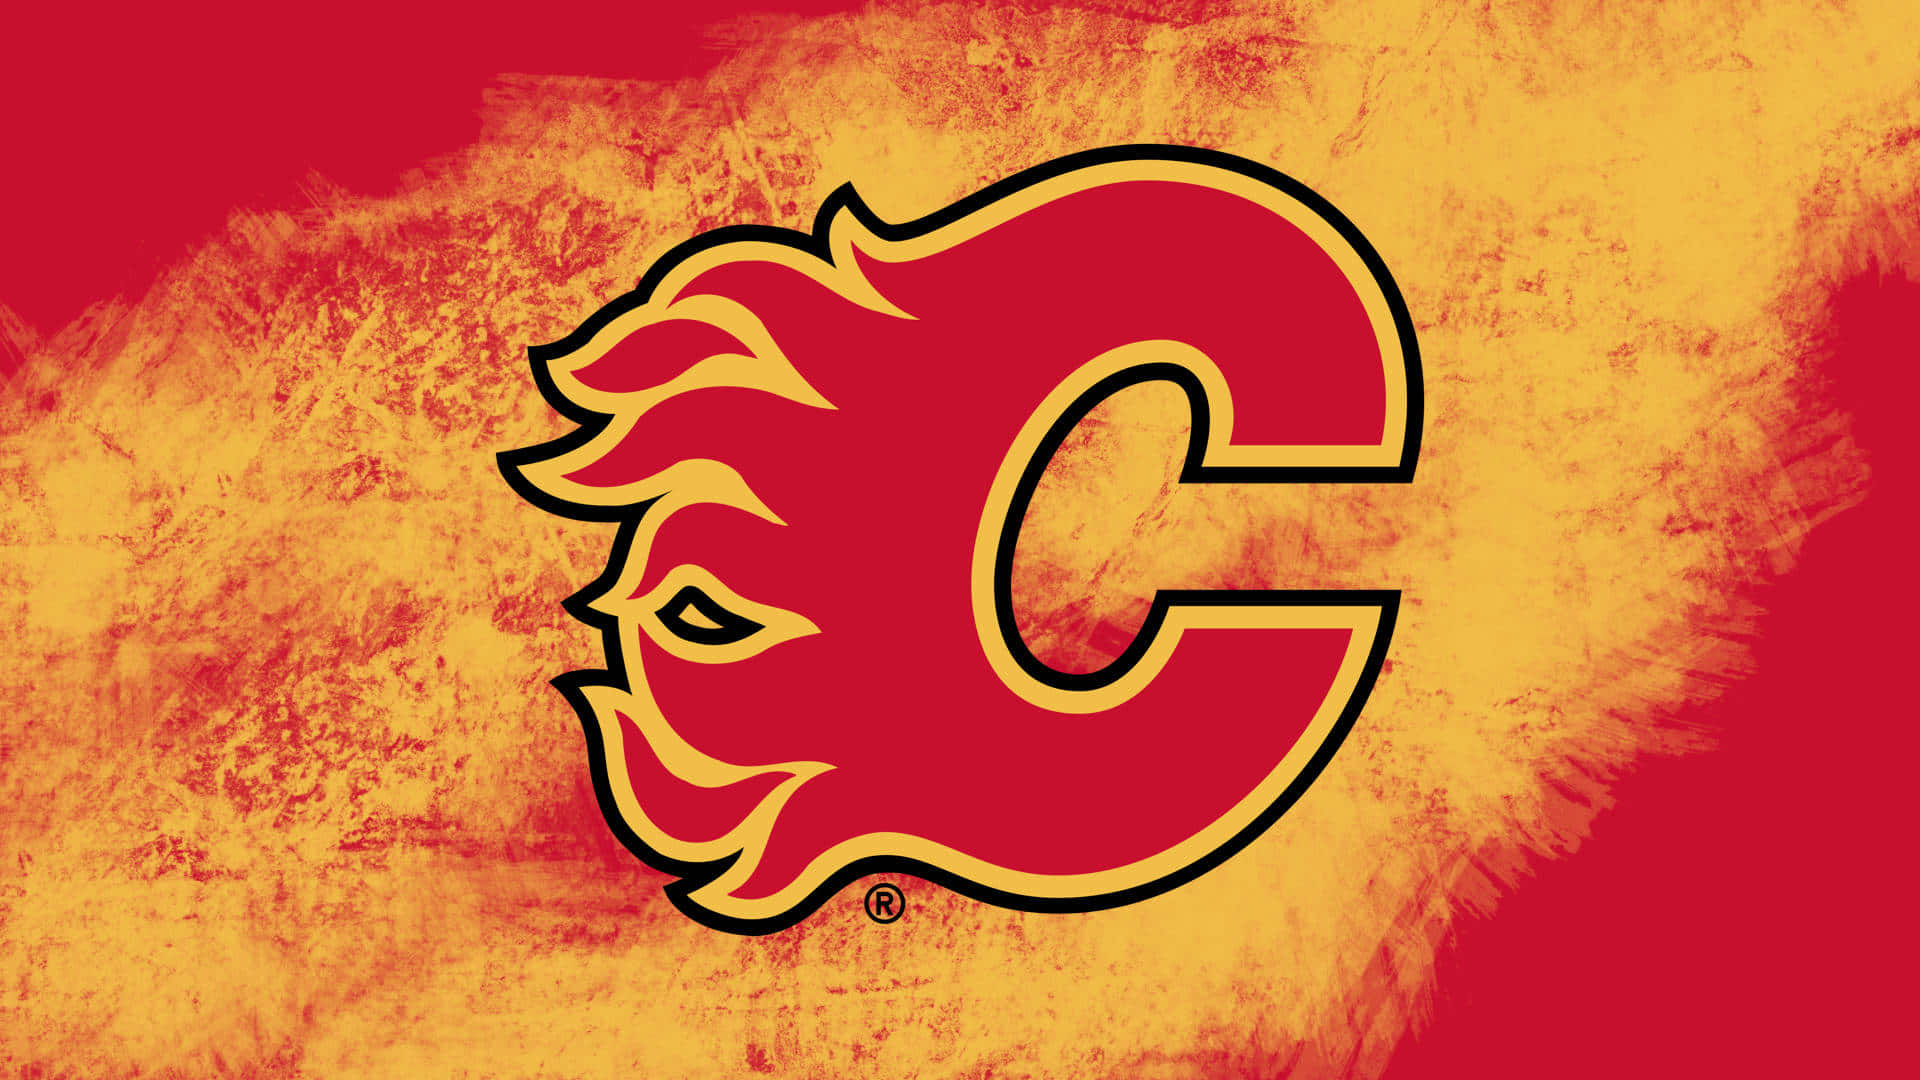 Illuminail Tuo Schermo Con Il Team Di Hockey Dei Calgary Flames.